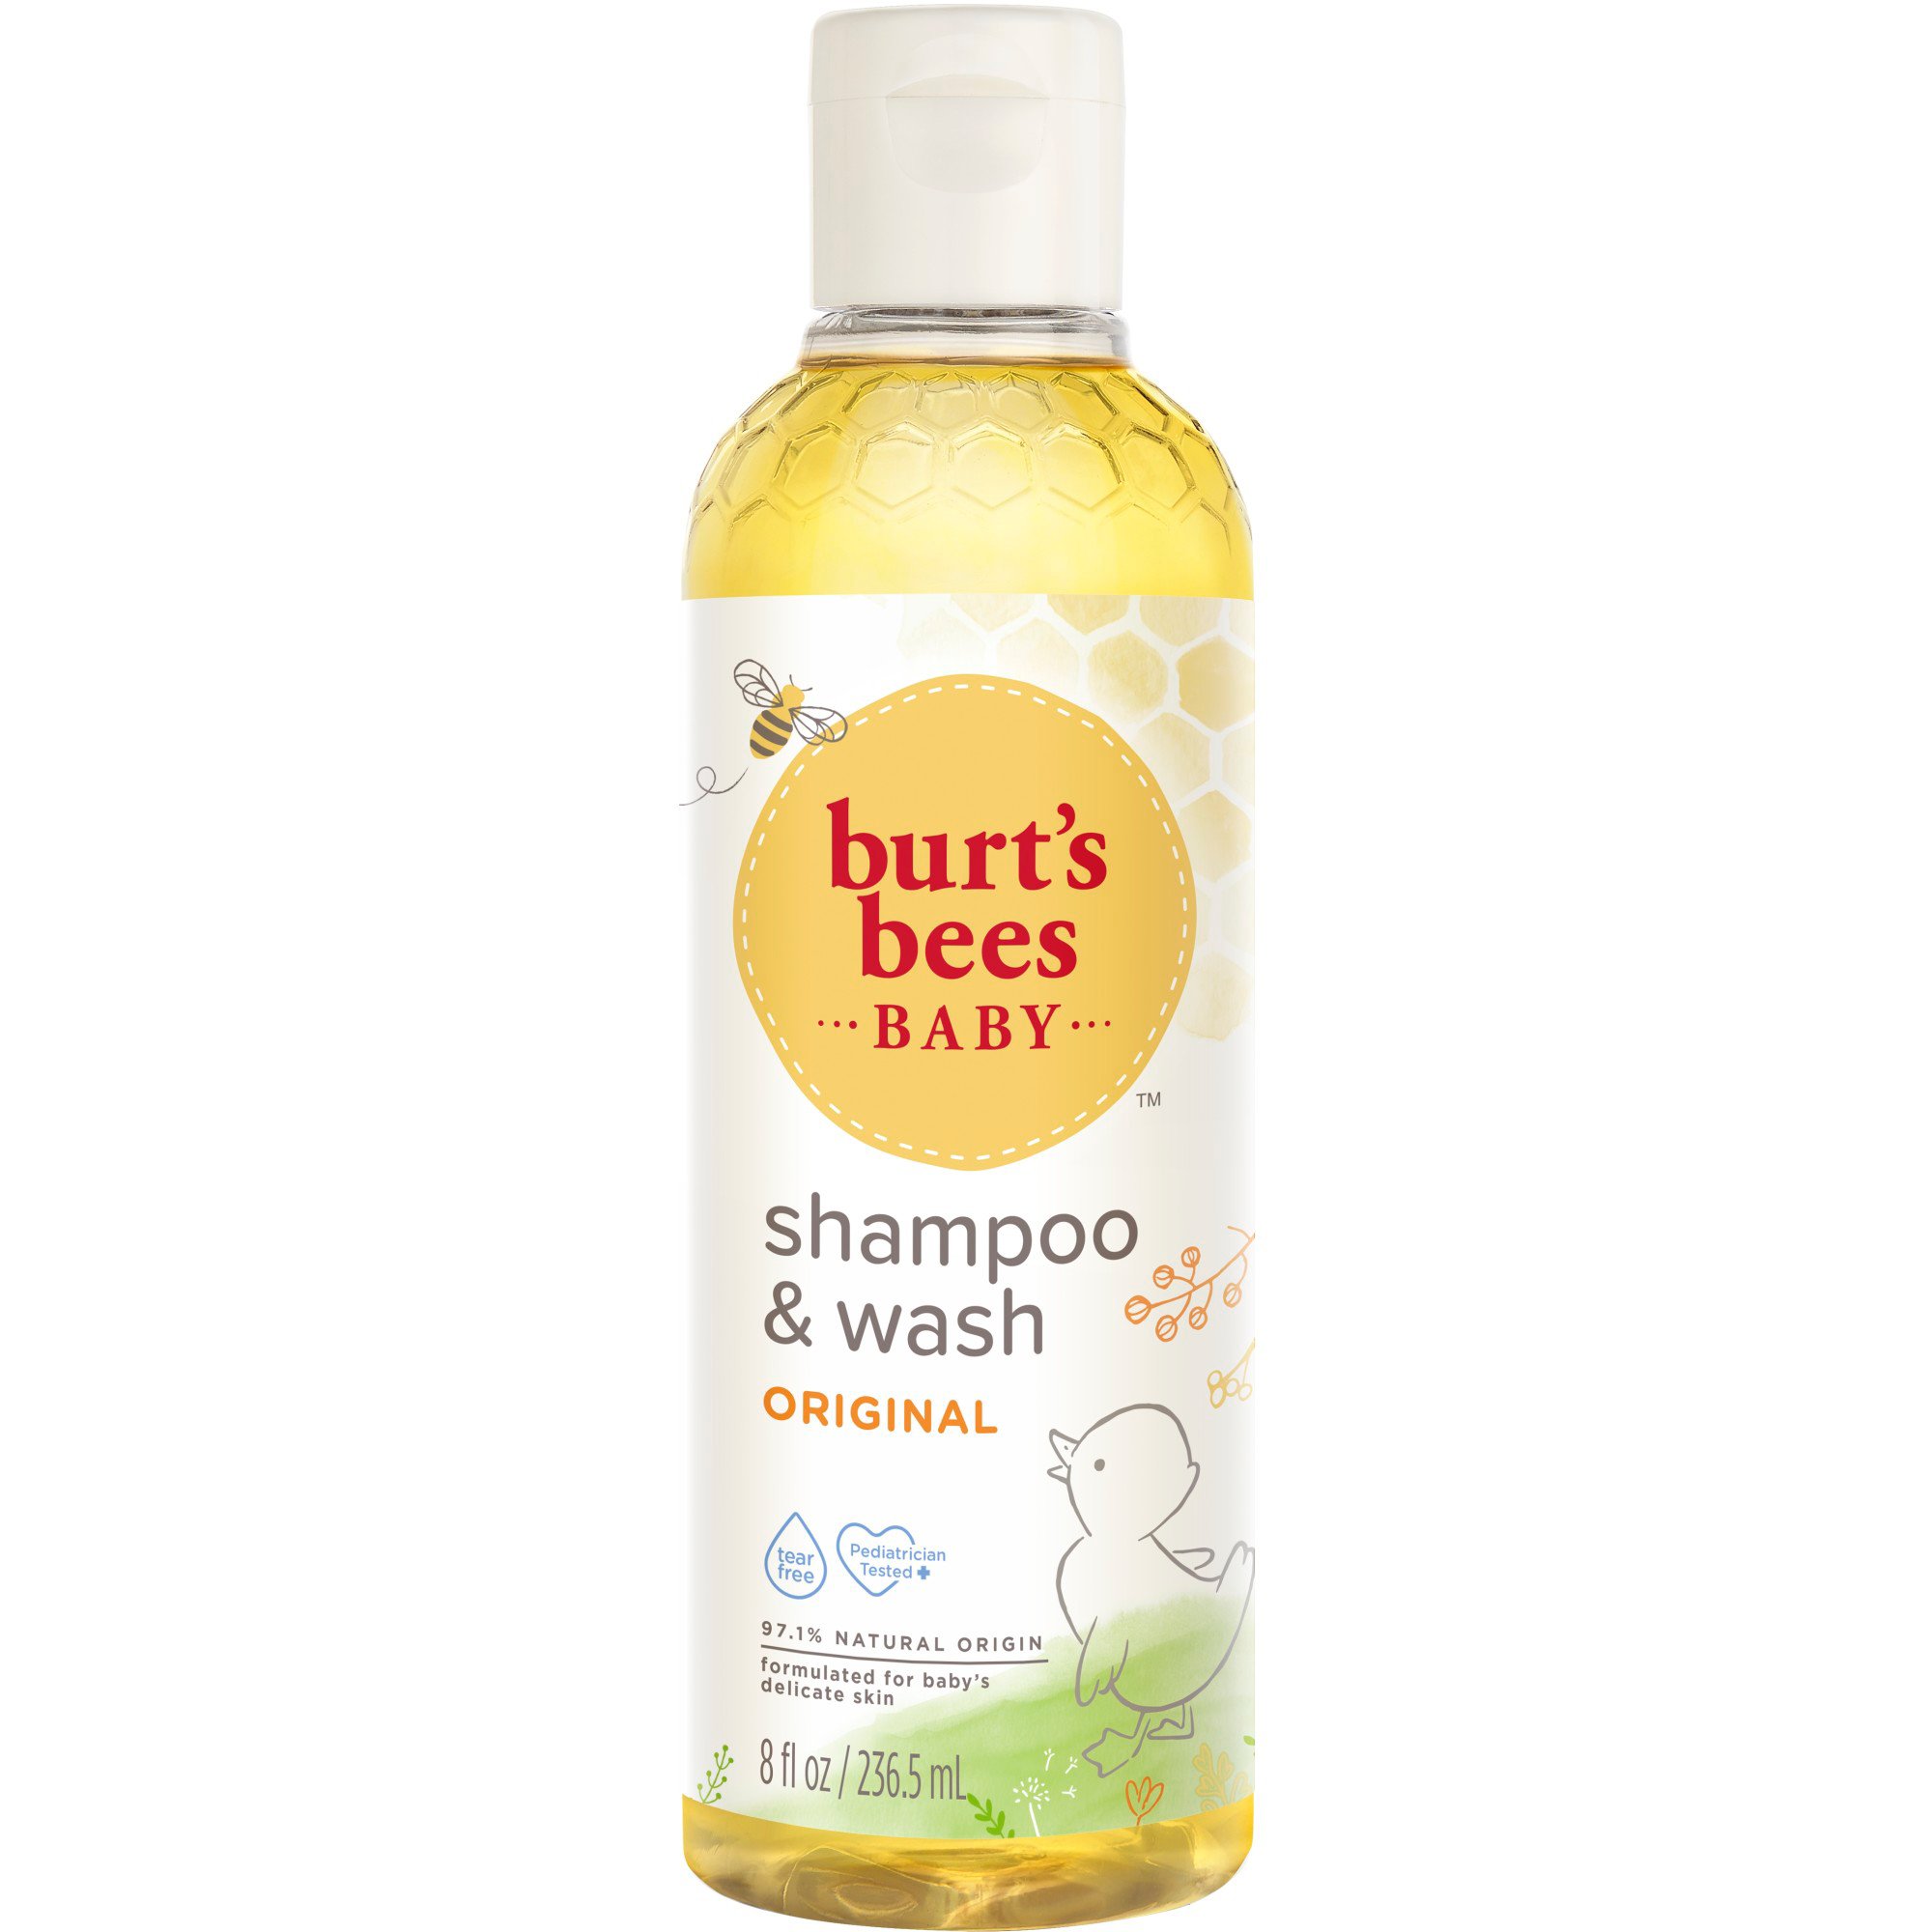 Burt's Bees Baby Shampoo & Wash - Shop Bath & Hair at H-E-B